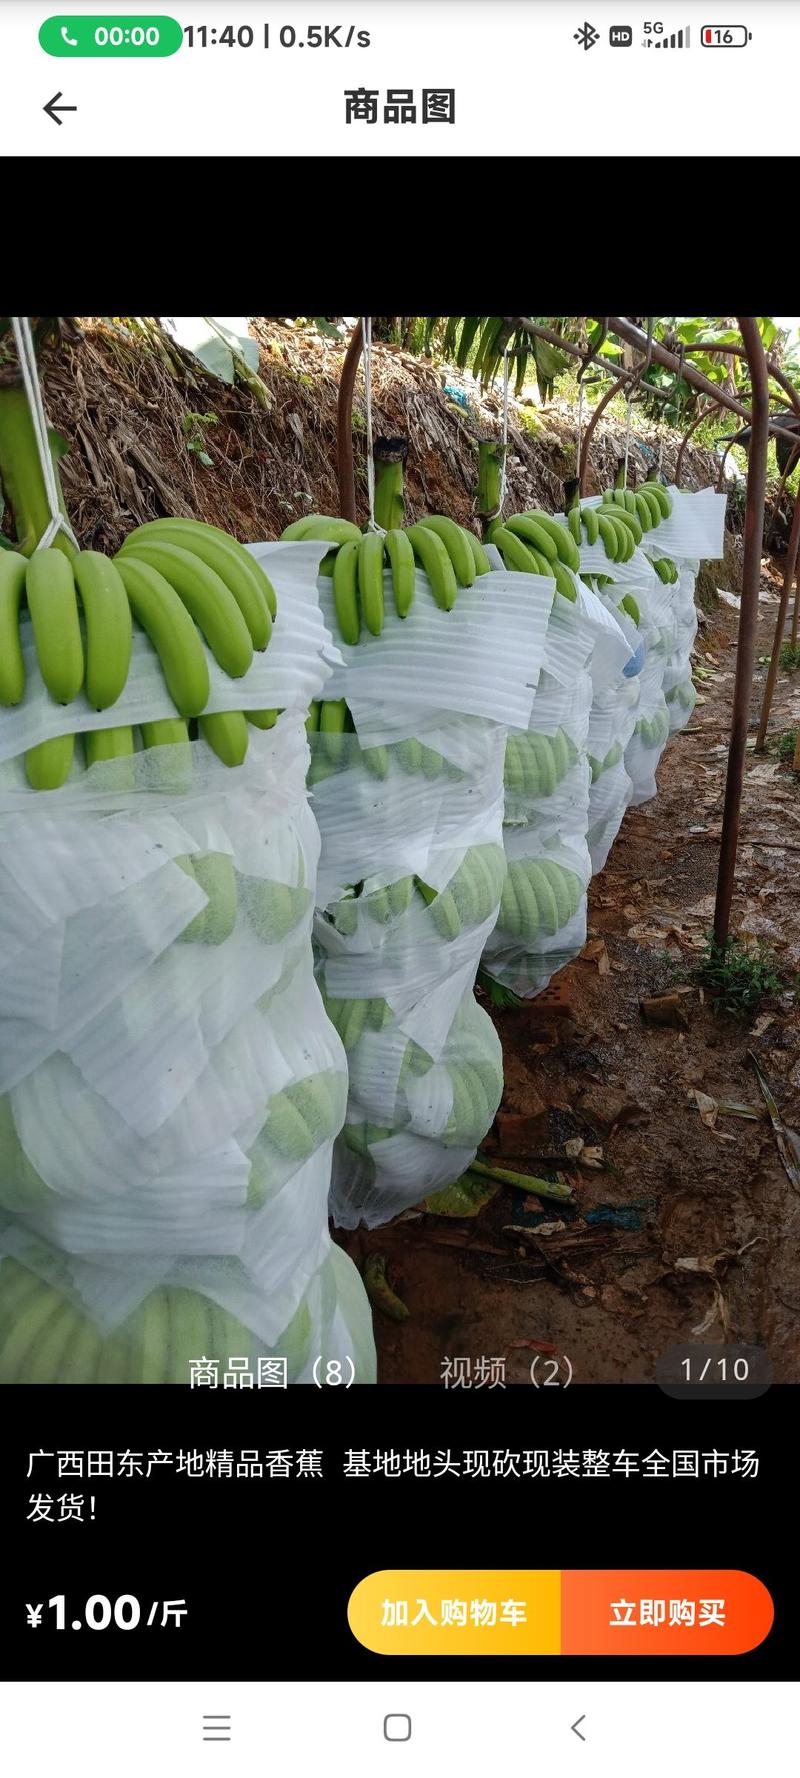 香蕉常年产地供应————————————